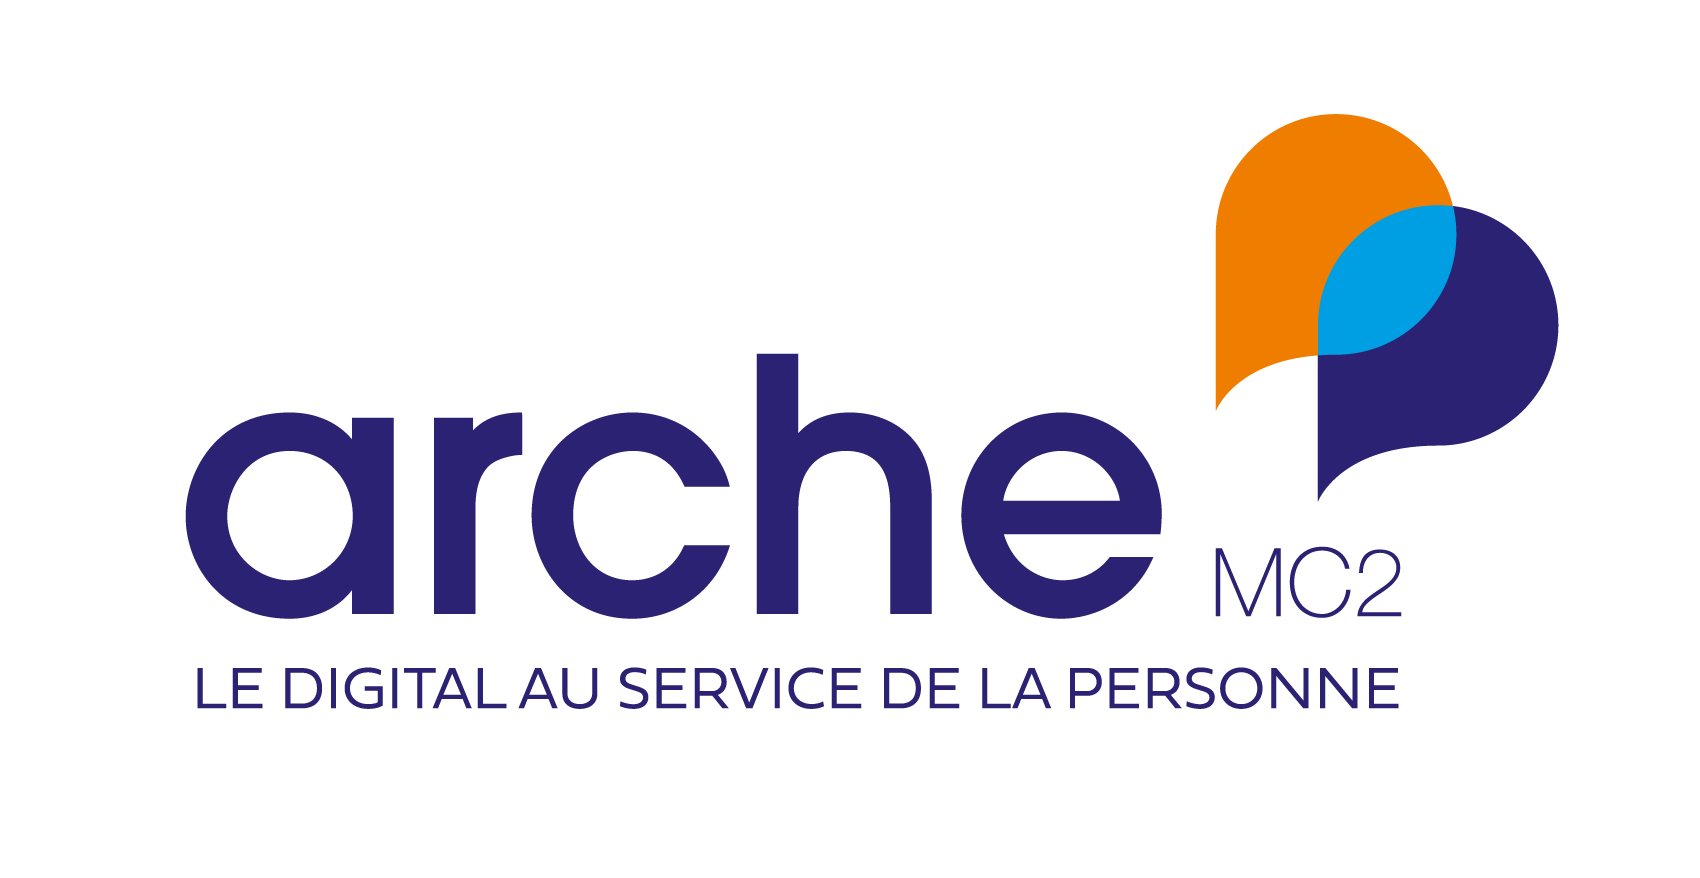 ArcheMC2